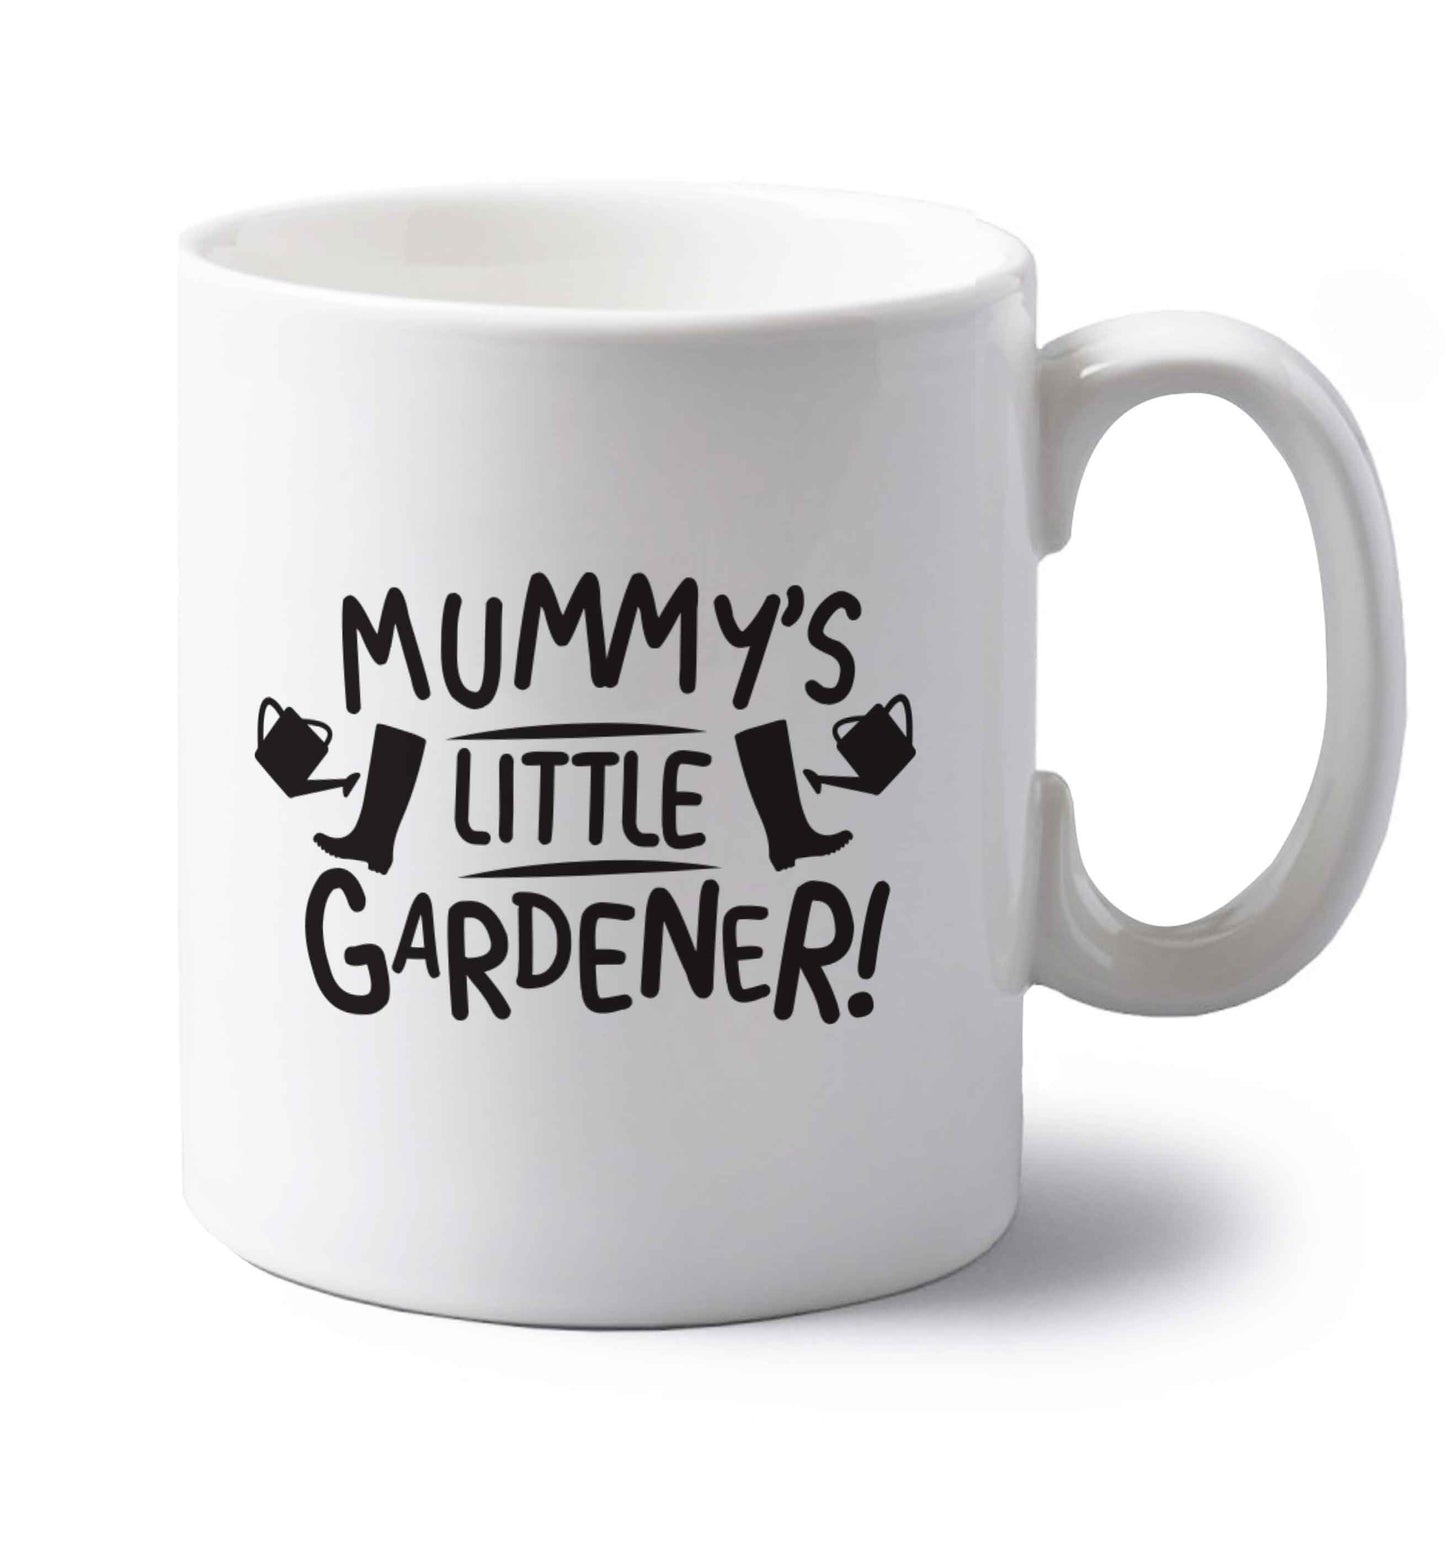 Mummy's little gardener left handed white ceramic mug 